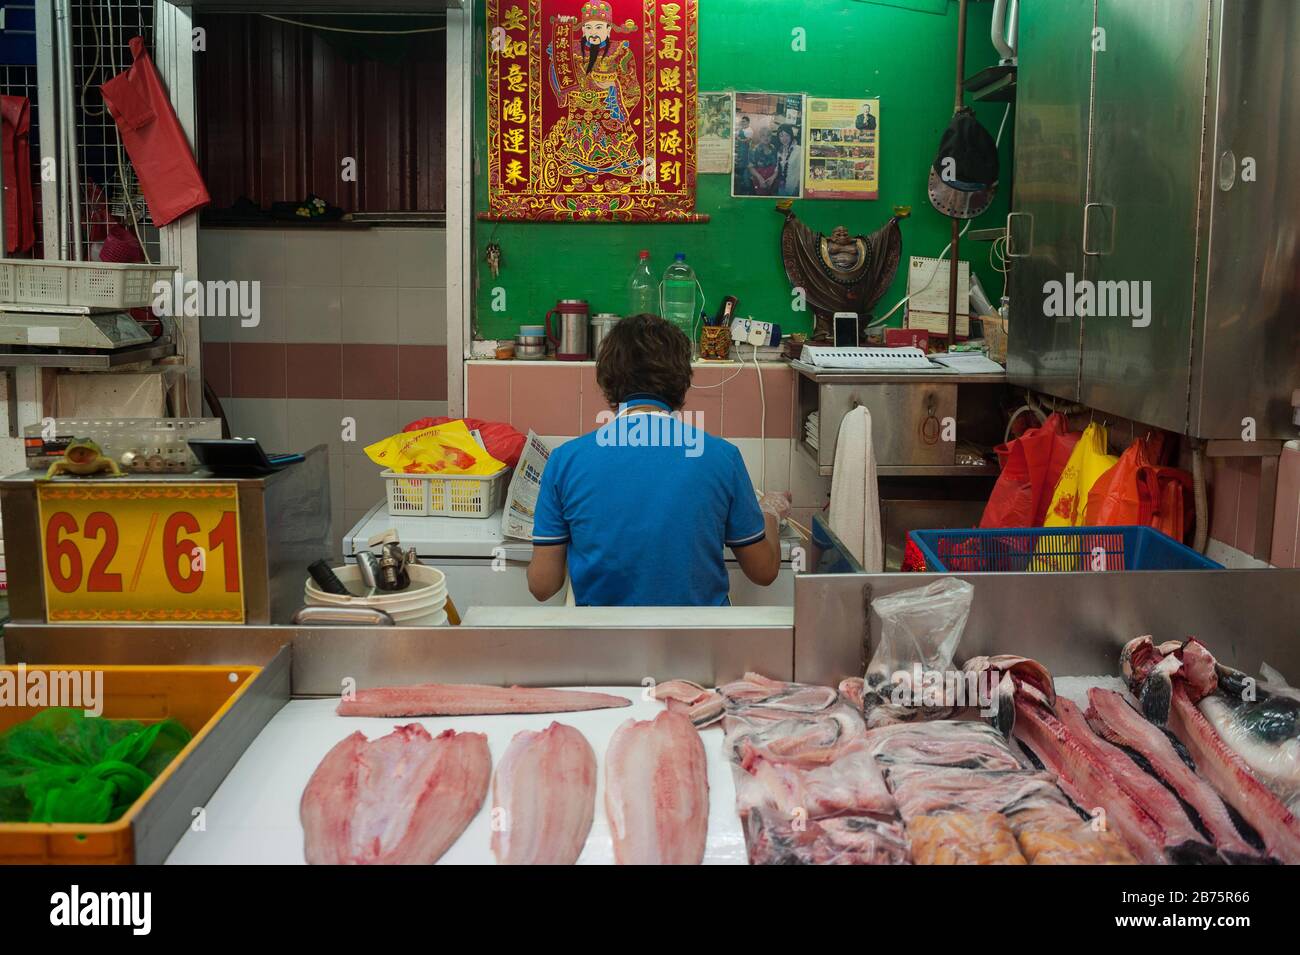 27.07.2017, Singapour, République de Singapour, Asie - un vendeur de poissons du marché chinois prend une pause et lit le journal tout en mangeant. [traduction automatique] Banque D'Images